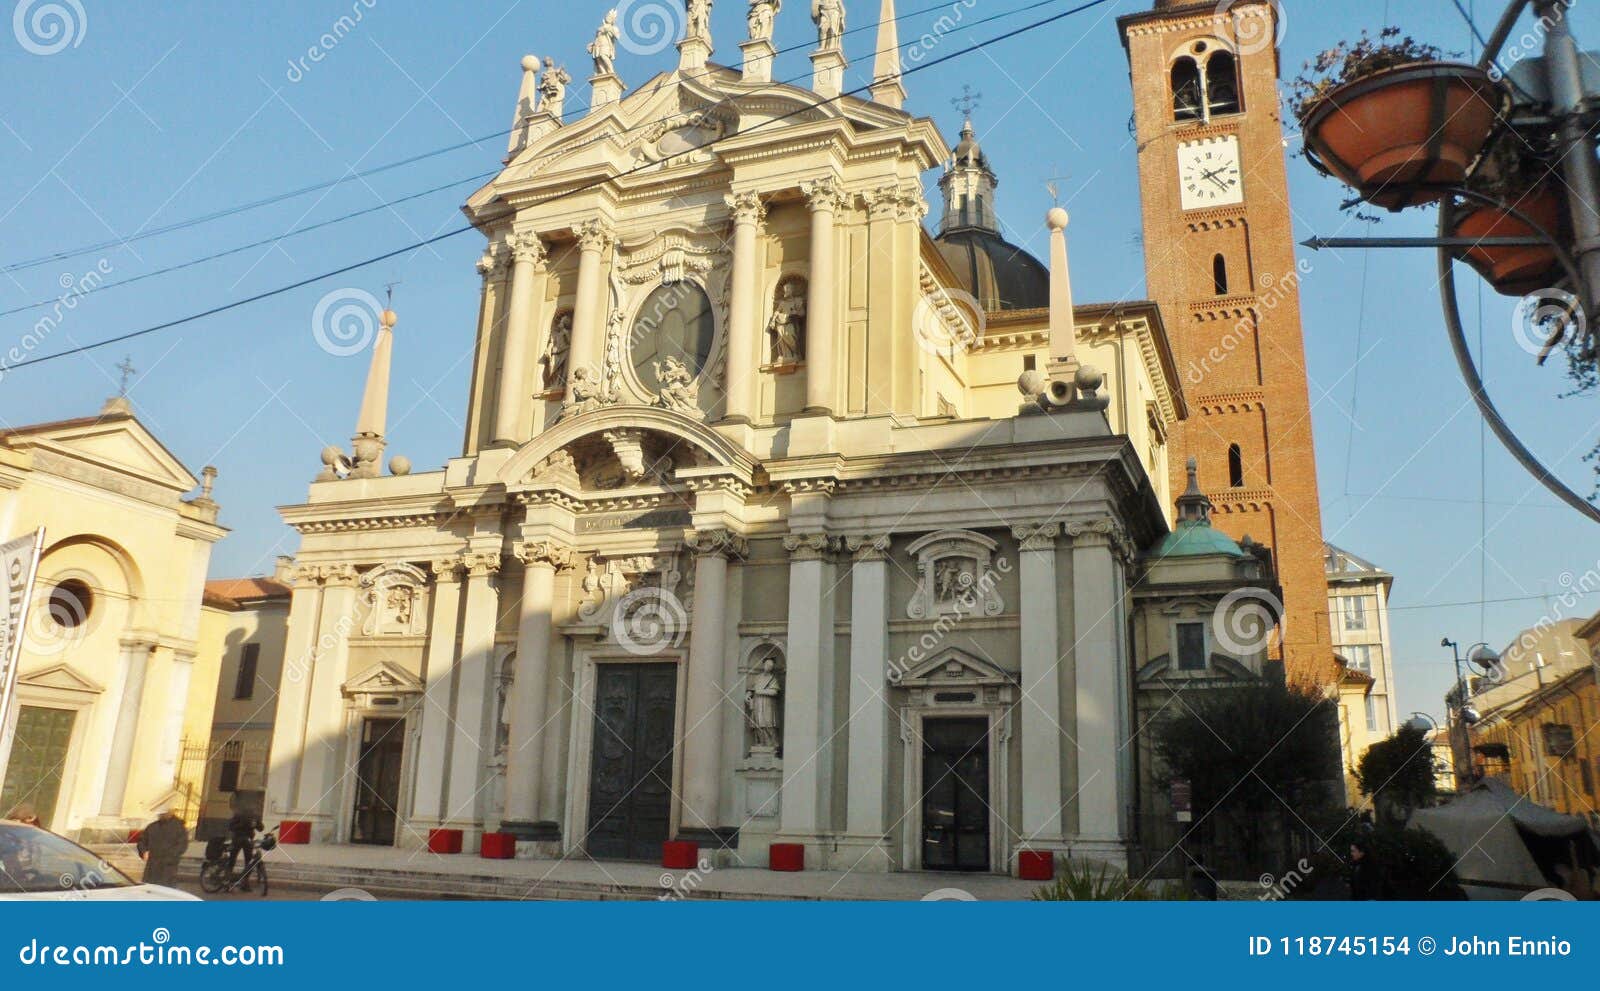 the basilica of san giovanni battista in busto arsizio, italy